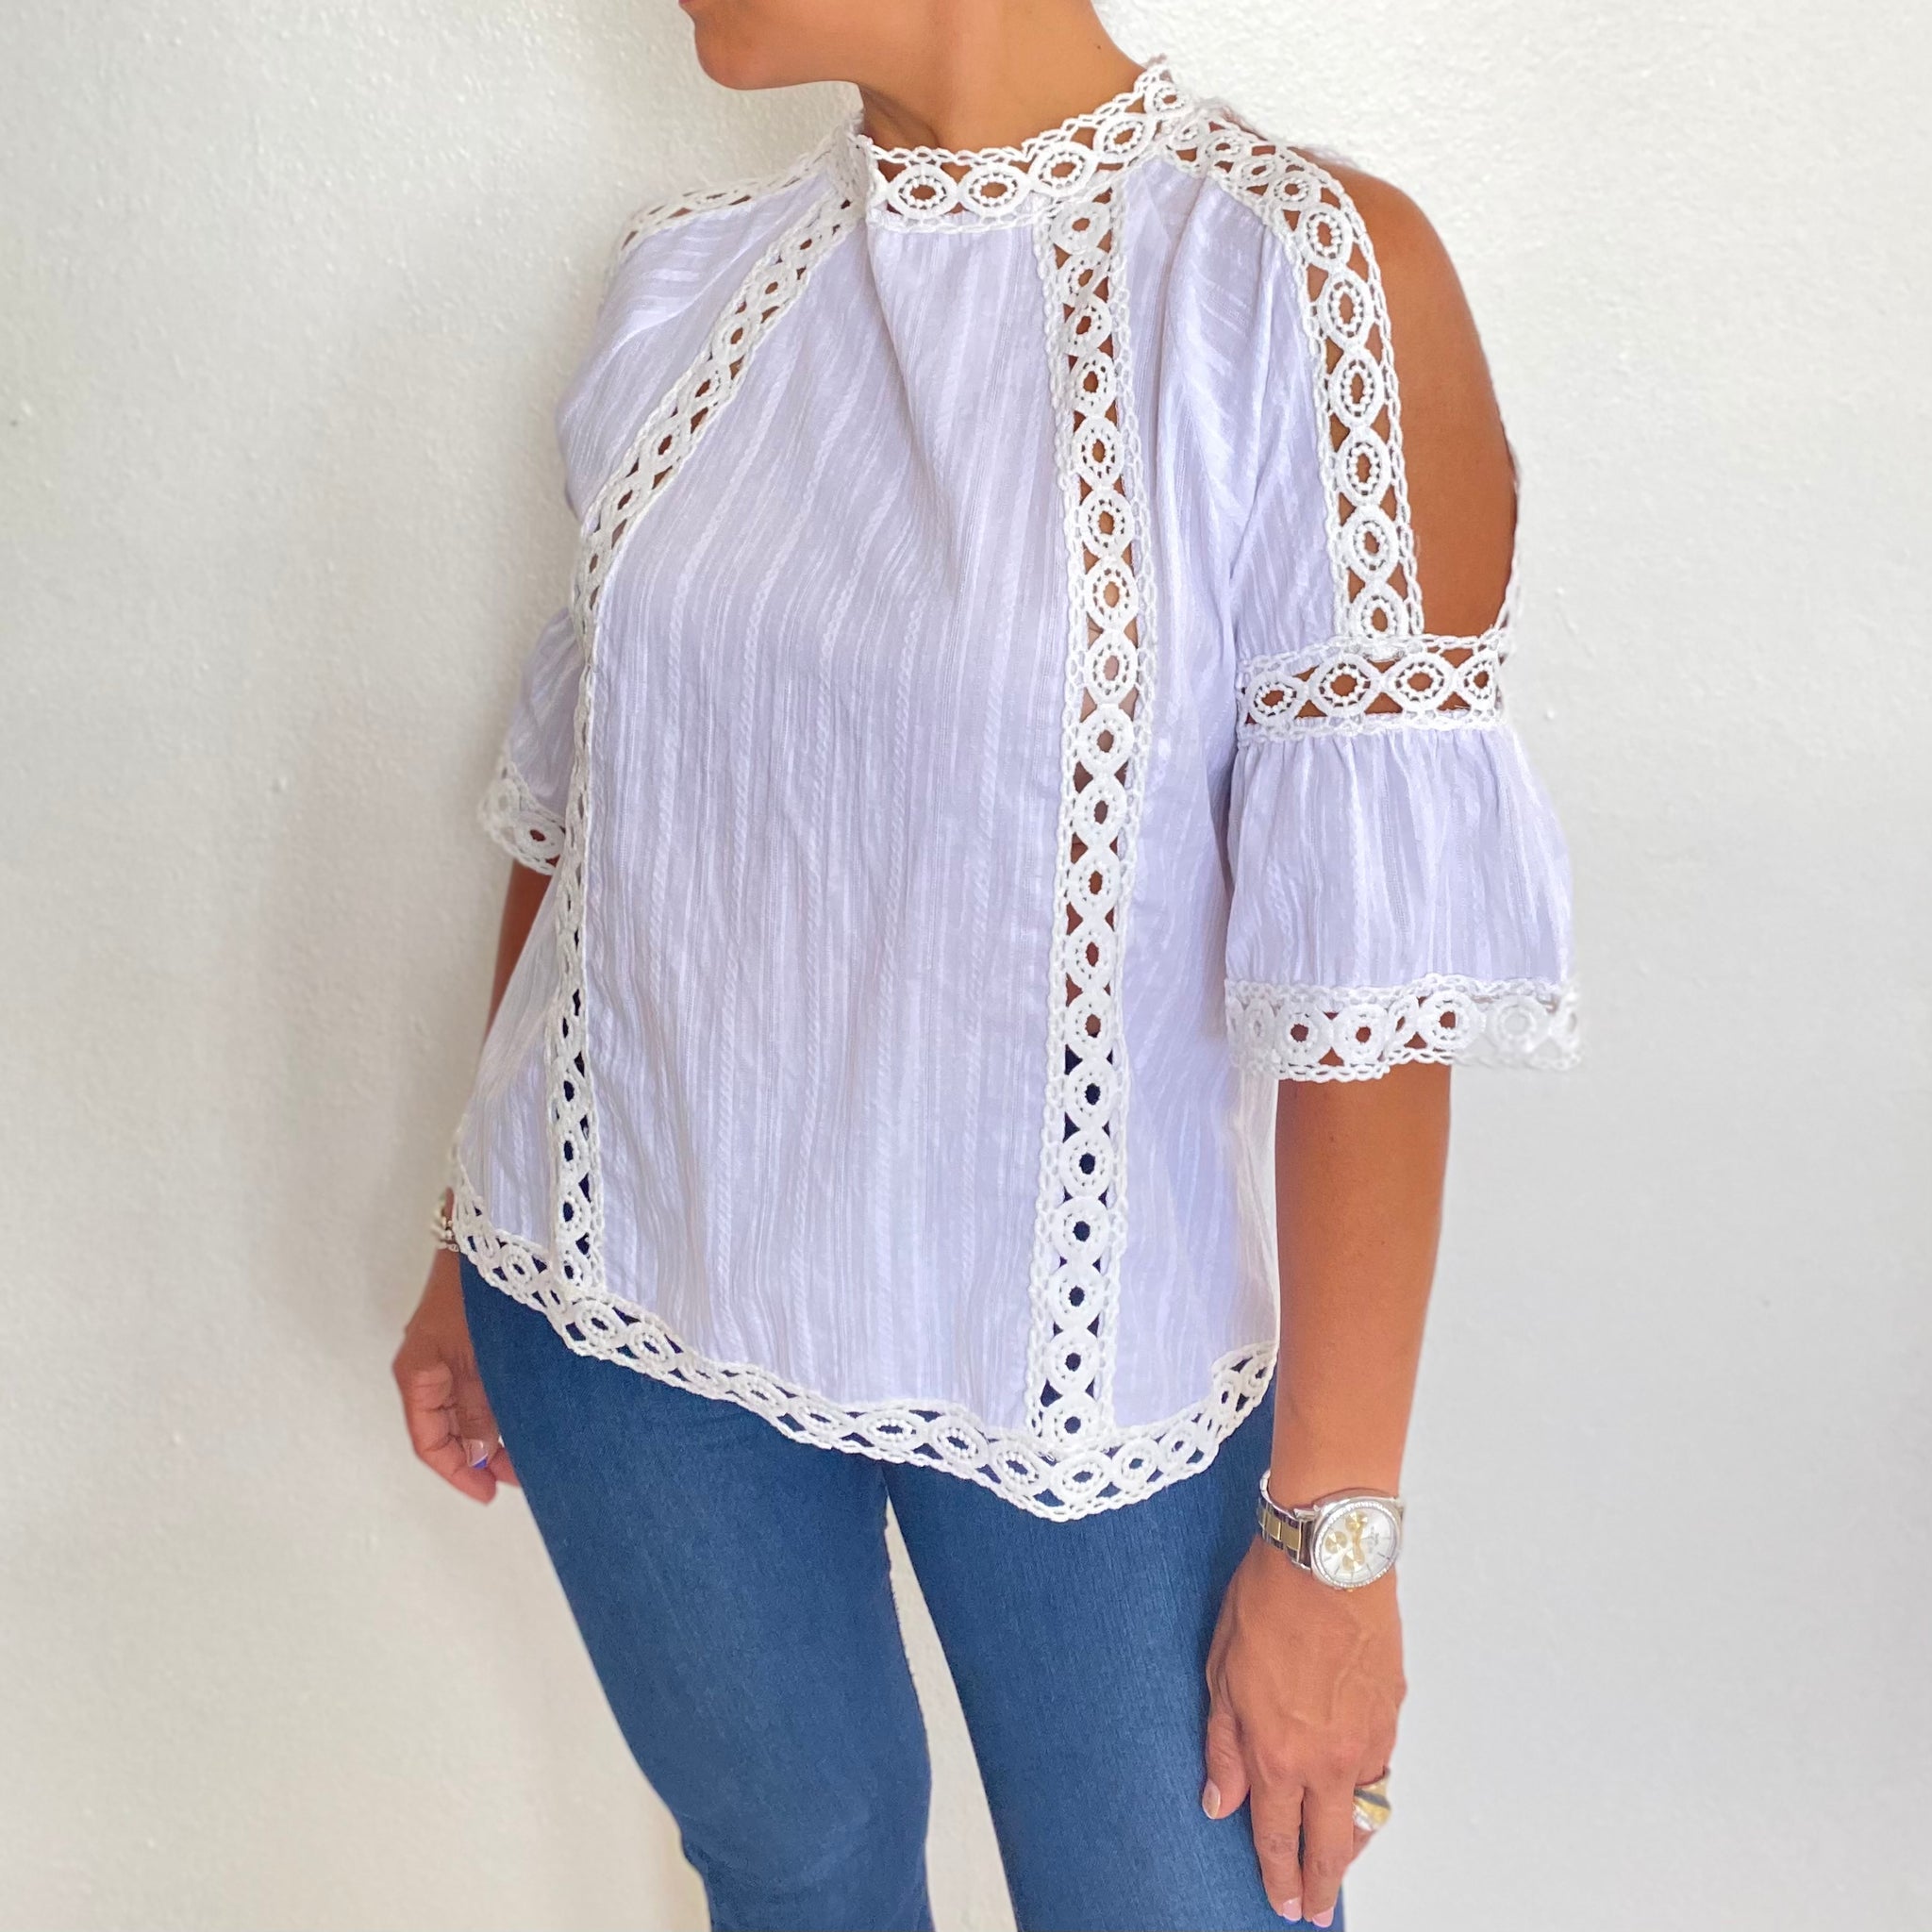 Lace trim detail shoulder cutout blouse top